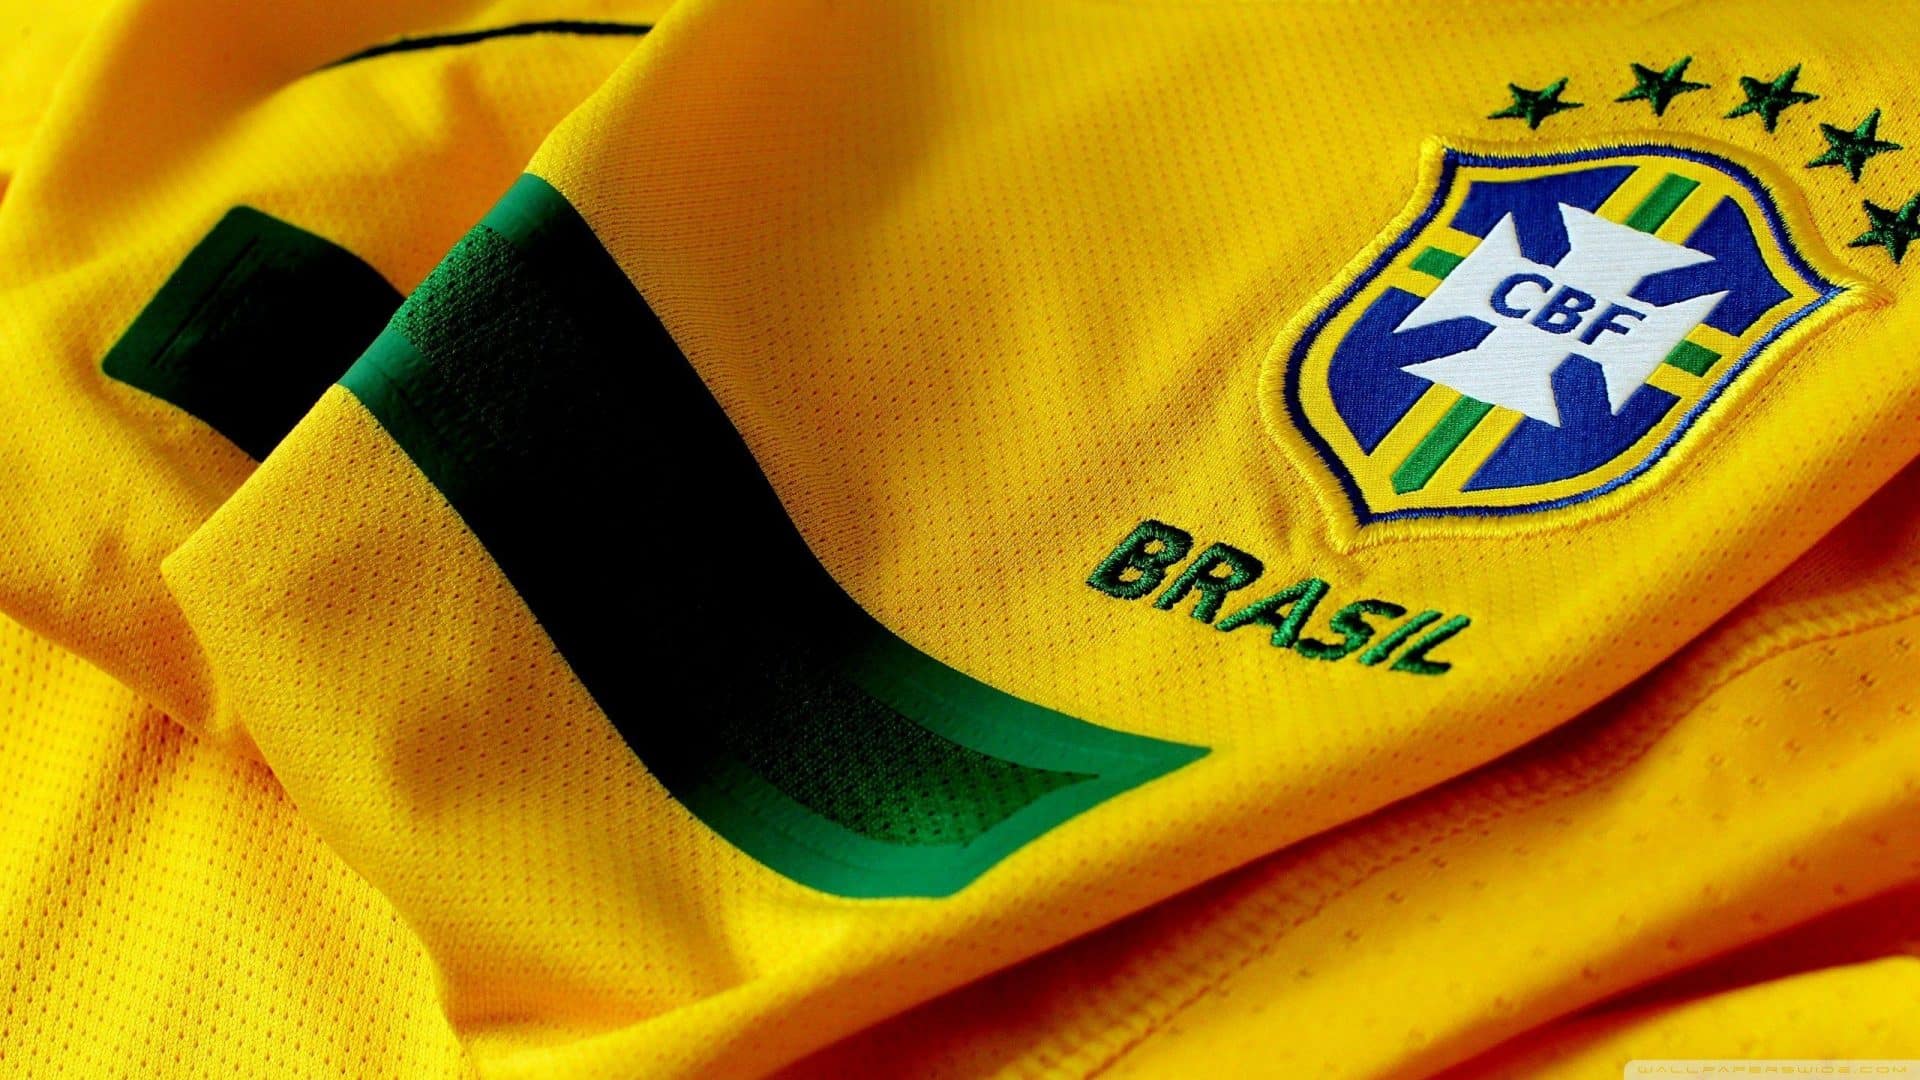 Quem são os jogadores da seleção brasileira na Copa do Catar 2022